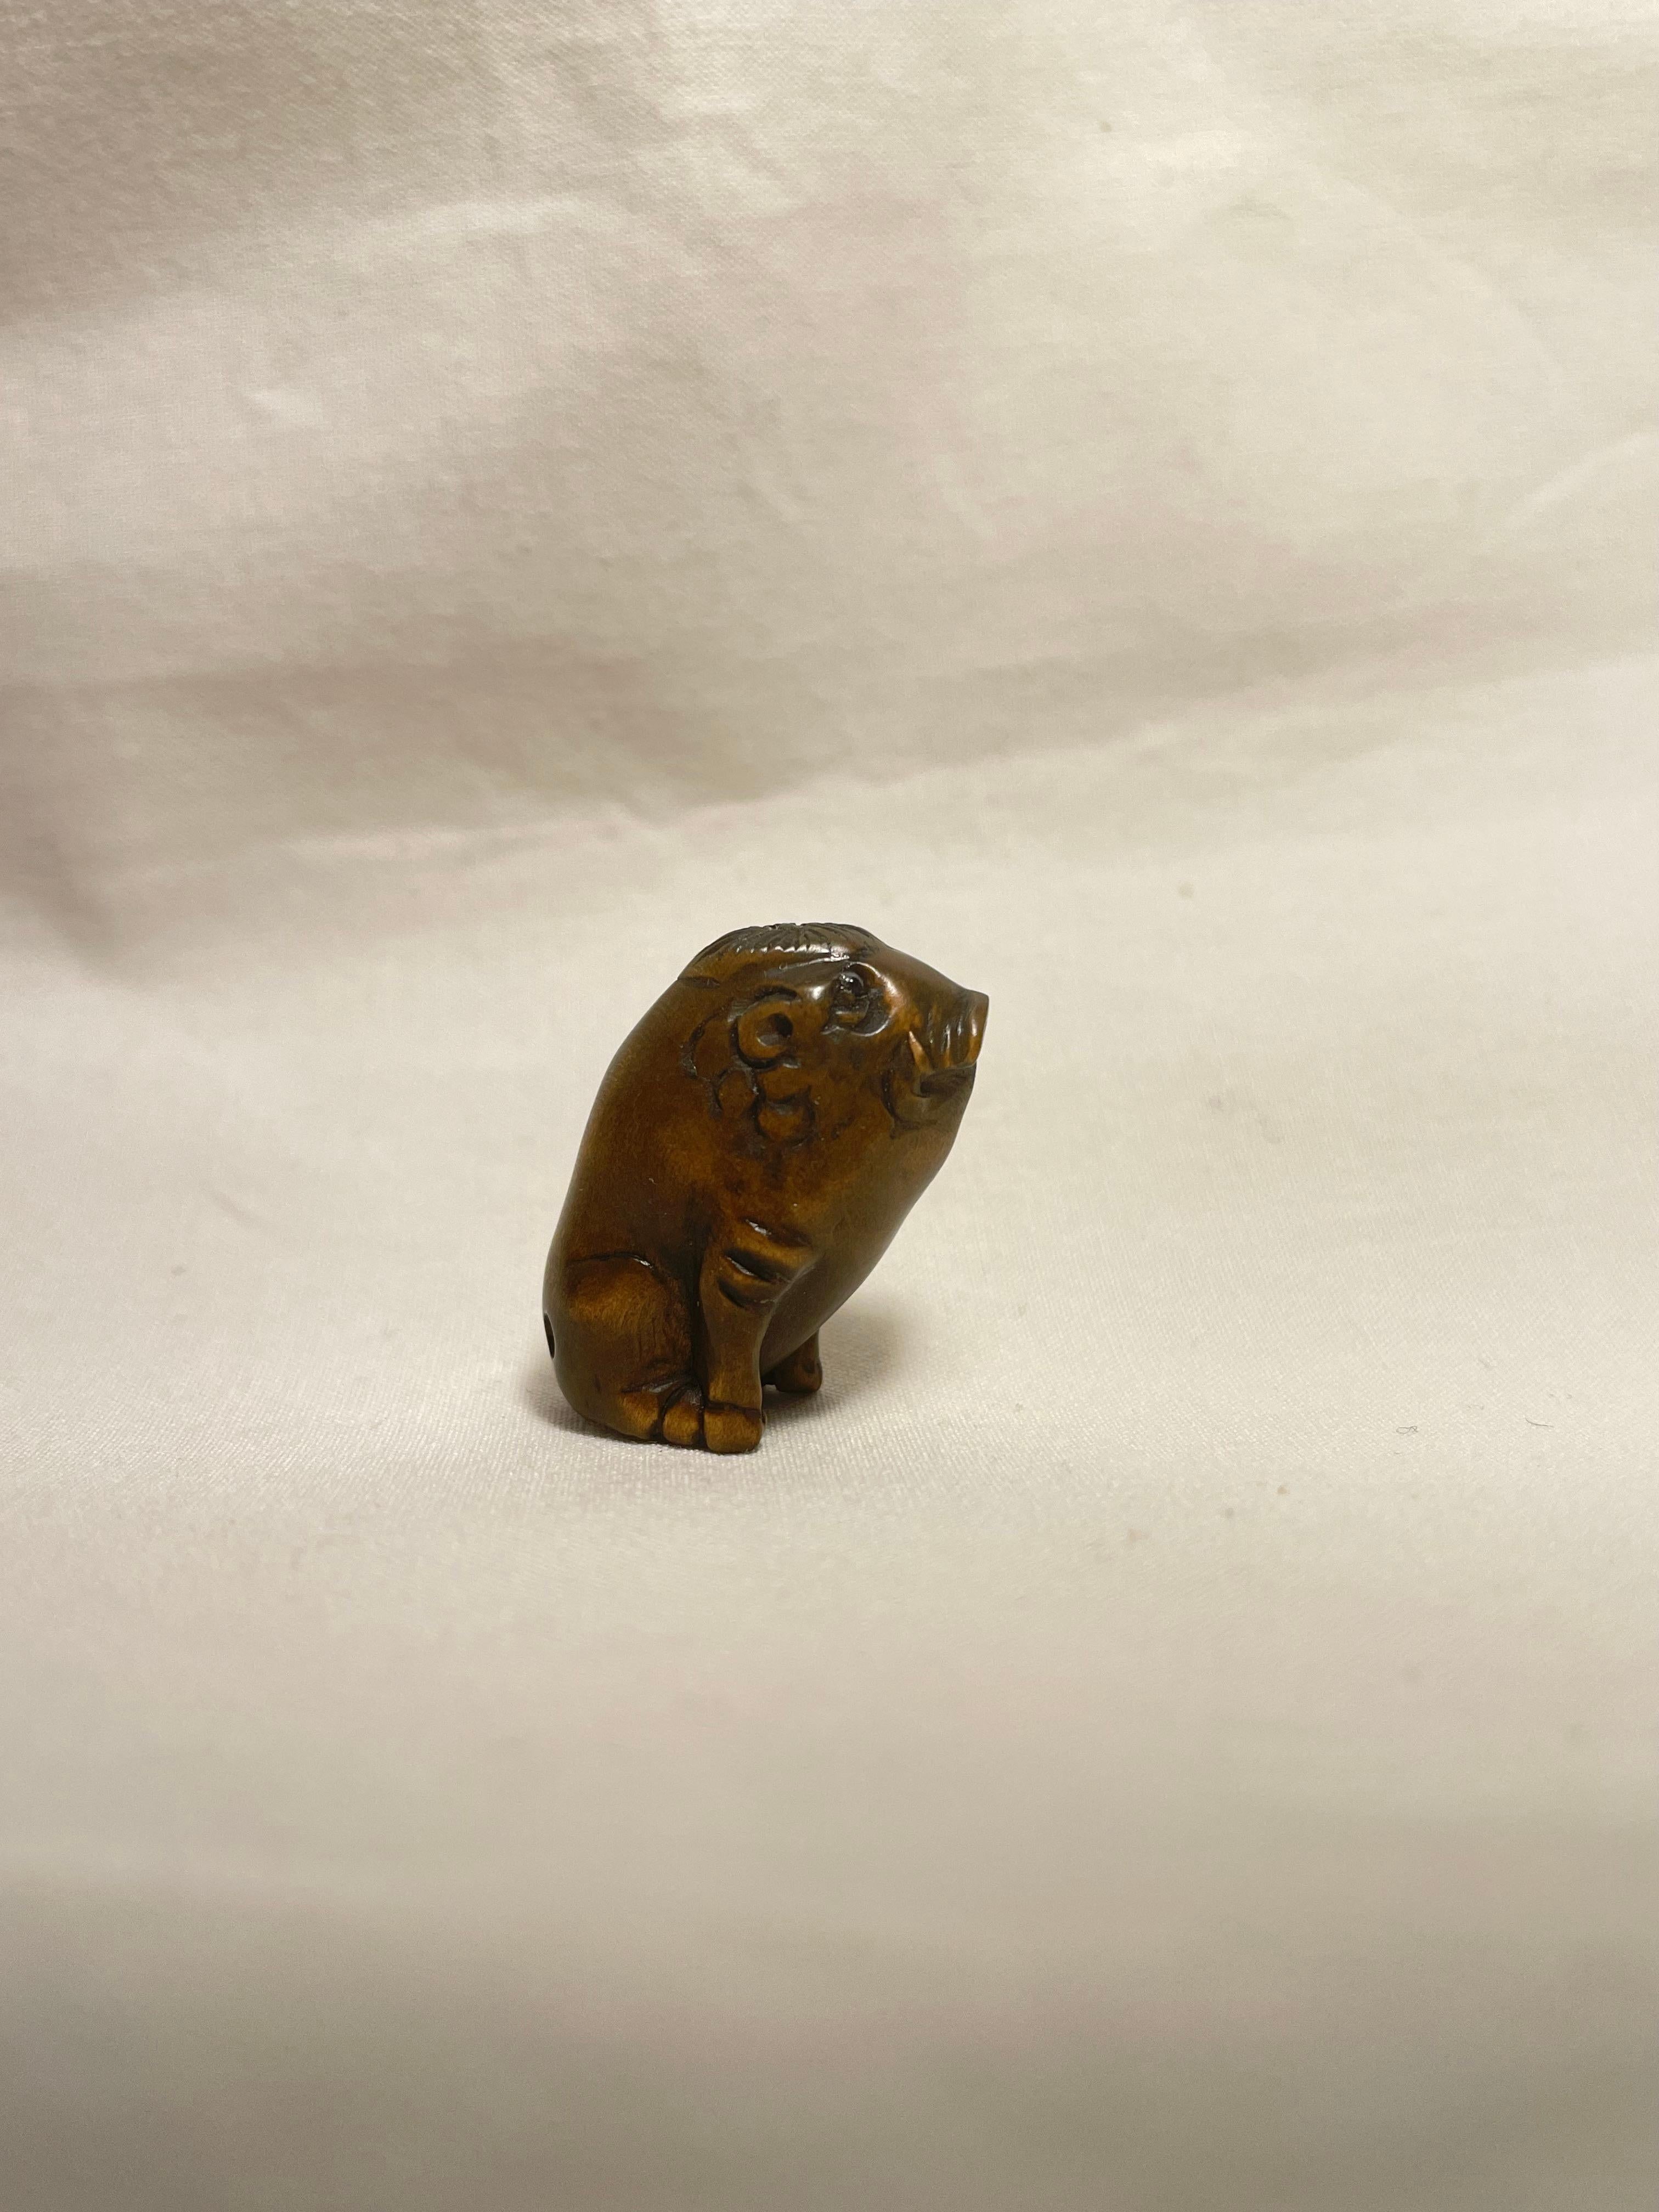 Dies ist ein antikes Netsuke, das in Japan um die Showa-Periode der 1960er Jahre hergestellt wurde.

Abmessungen: 1,5 x 2,3 x H2,5cm
Bildhauerei: Wildschwein
Epoche: 1960er Jahre (Showa) 

Netsuke sind Miniaturskulpturen, die ihren Ursprung im Japan